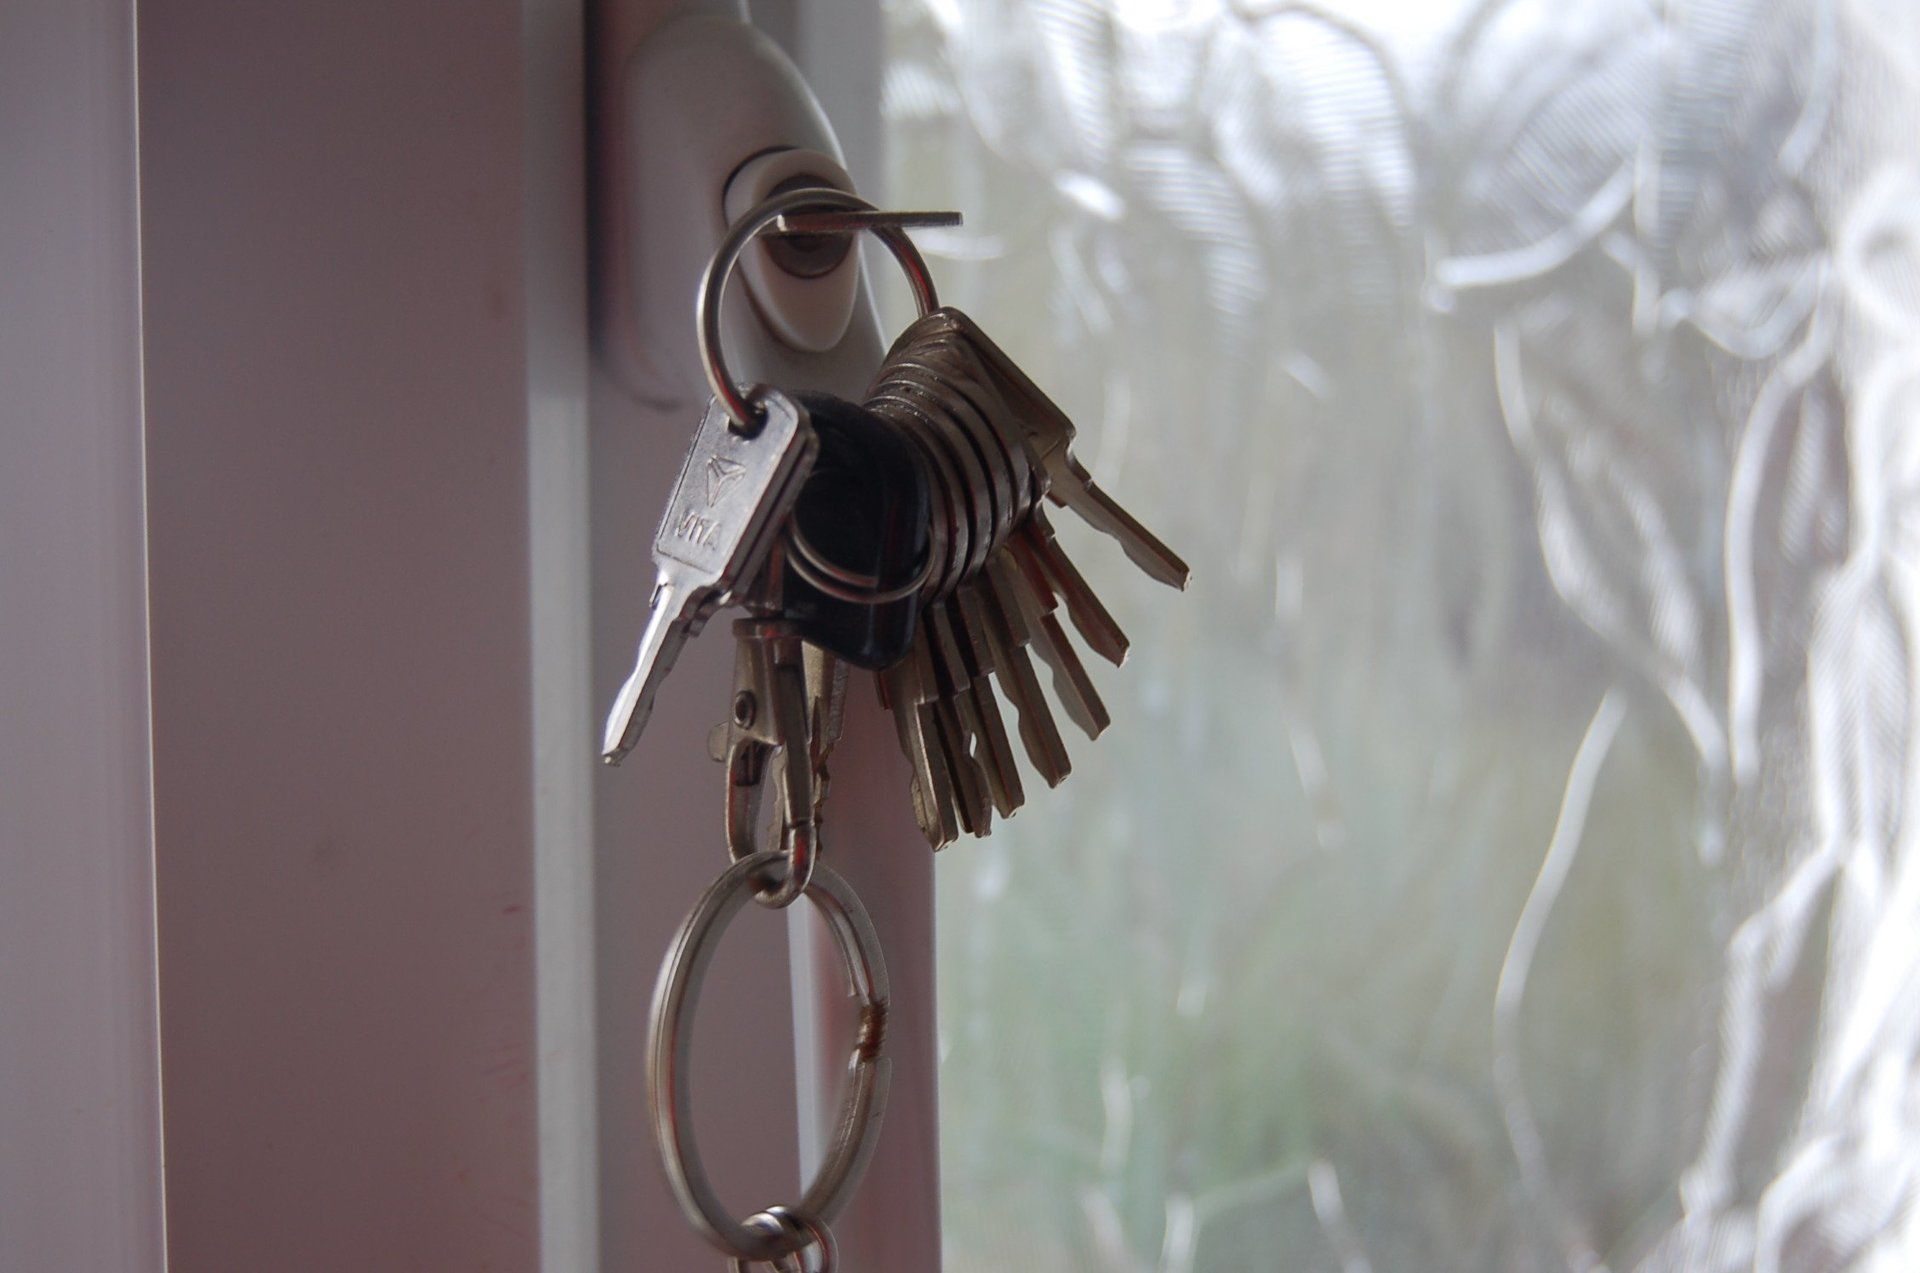 CJ Locksmiths locking window handles and key finder service